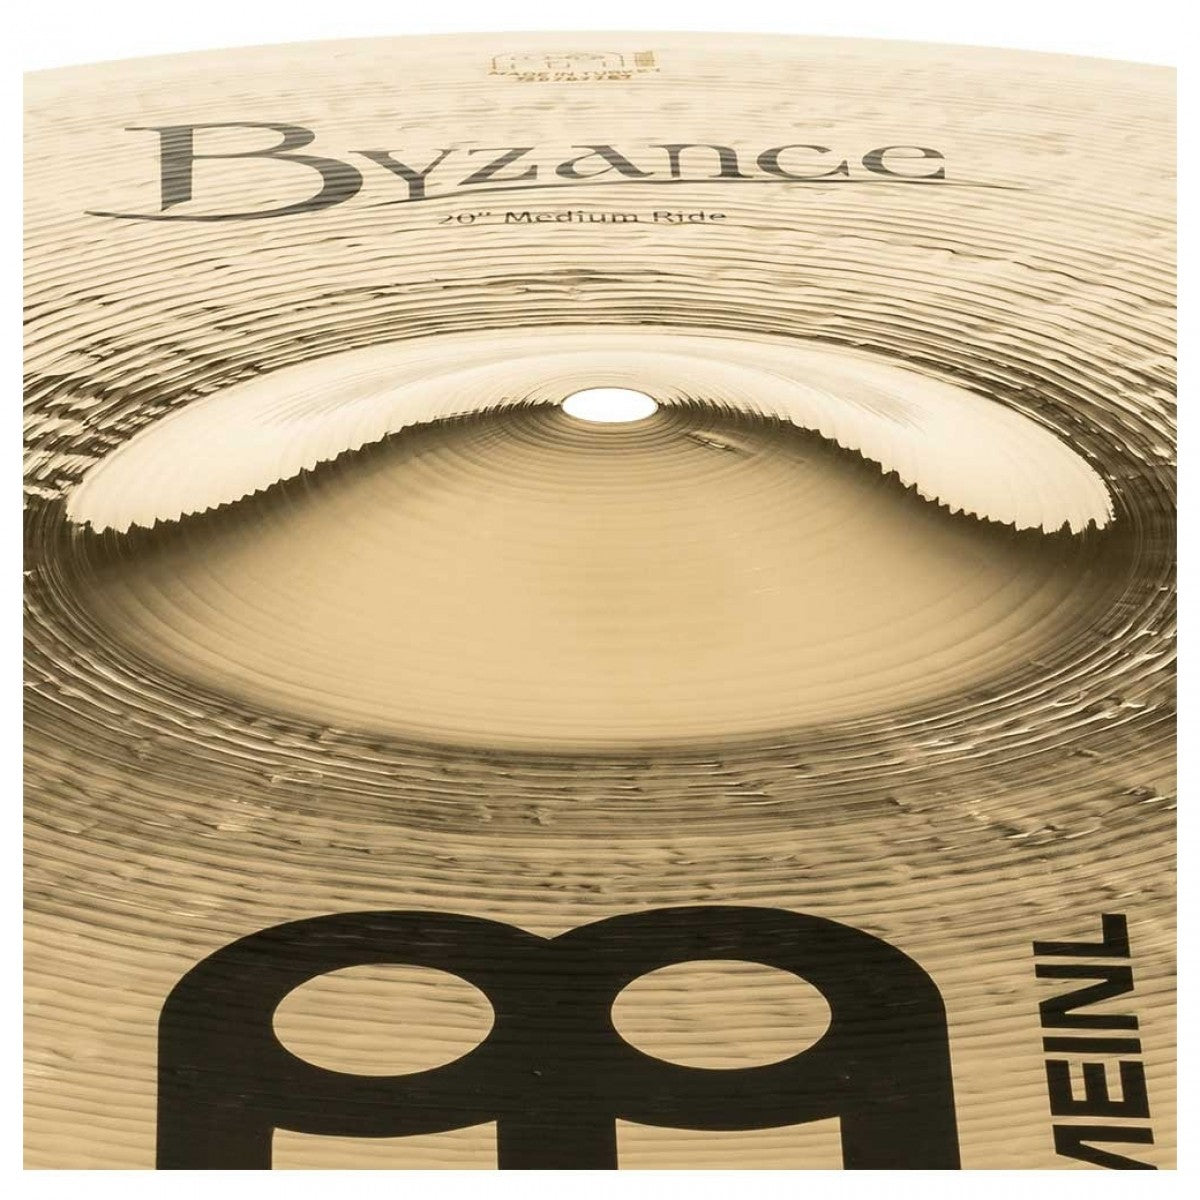 Cymbal Meinl Byzance Brilliant 20" Medium Ride - B20MR-B - Việt Music